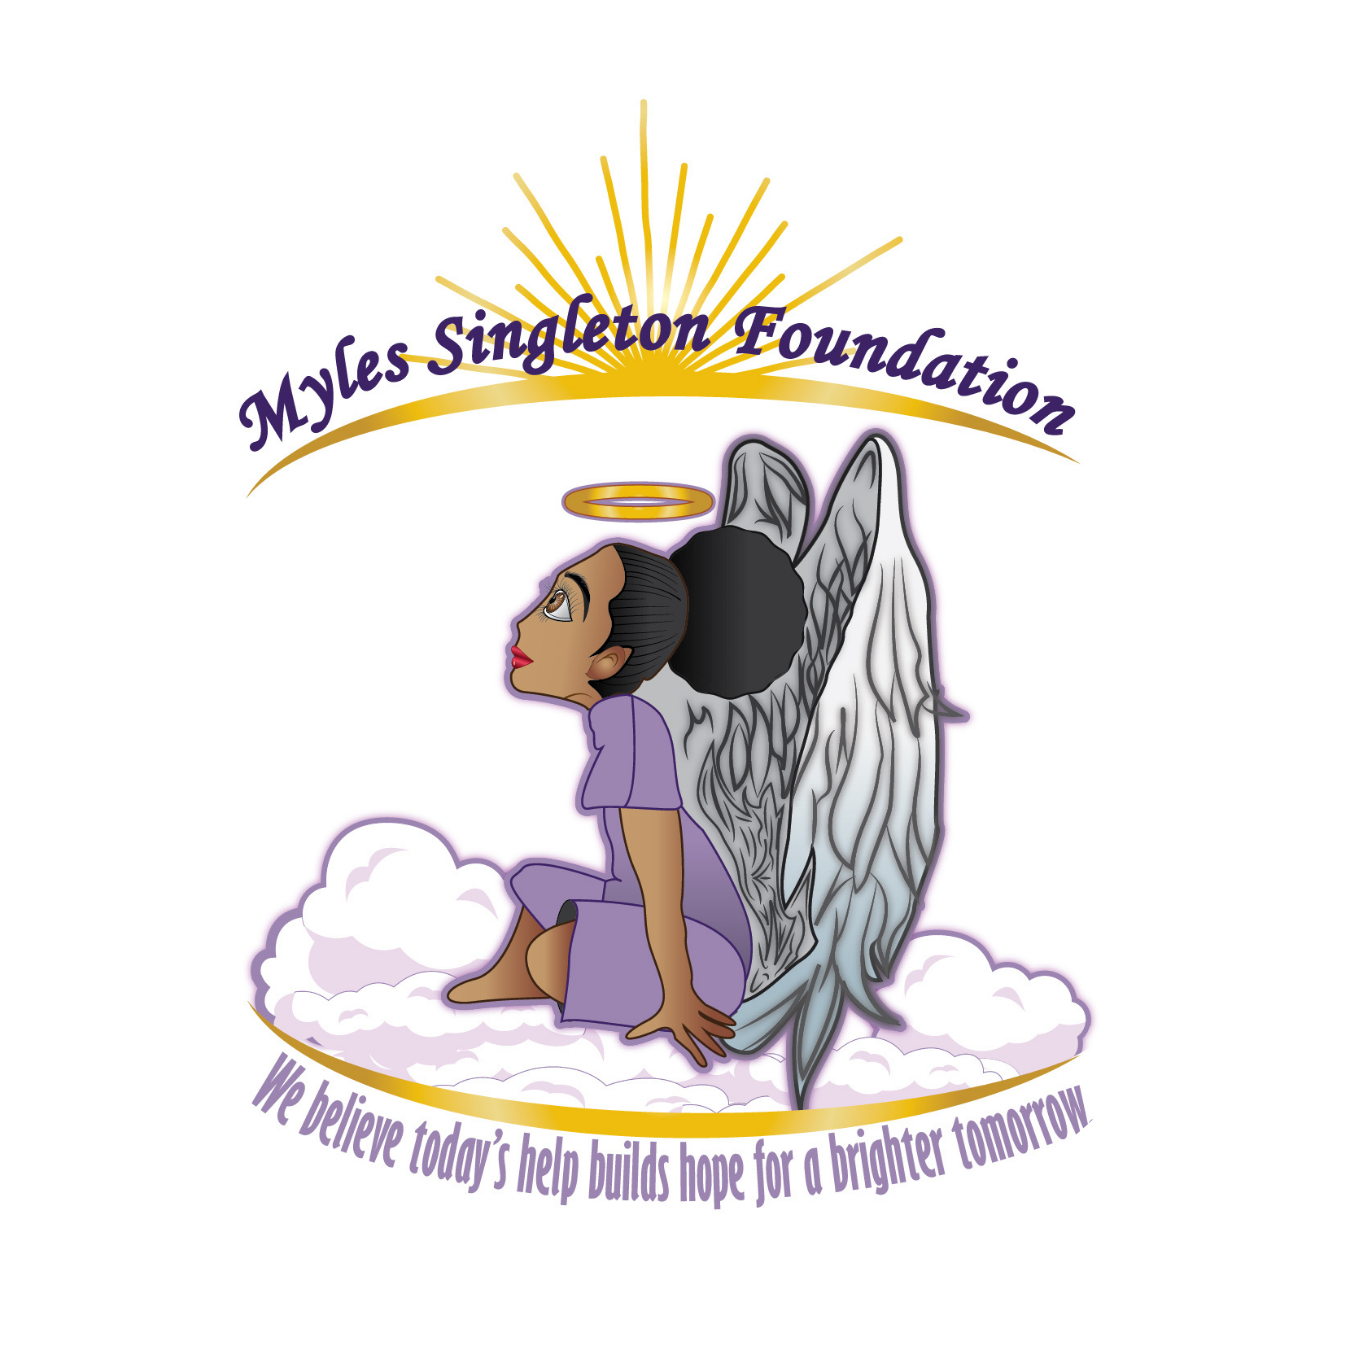 Myles Singleton Foundation